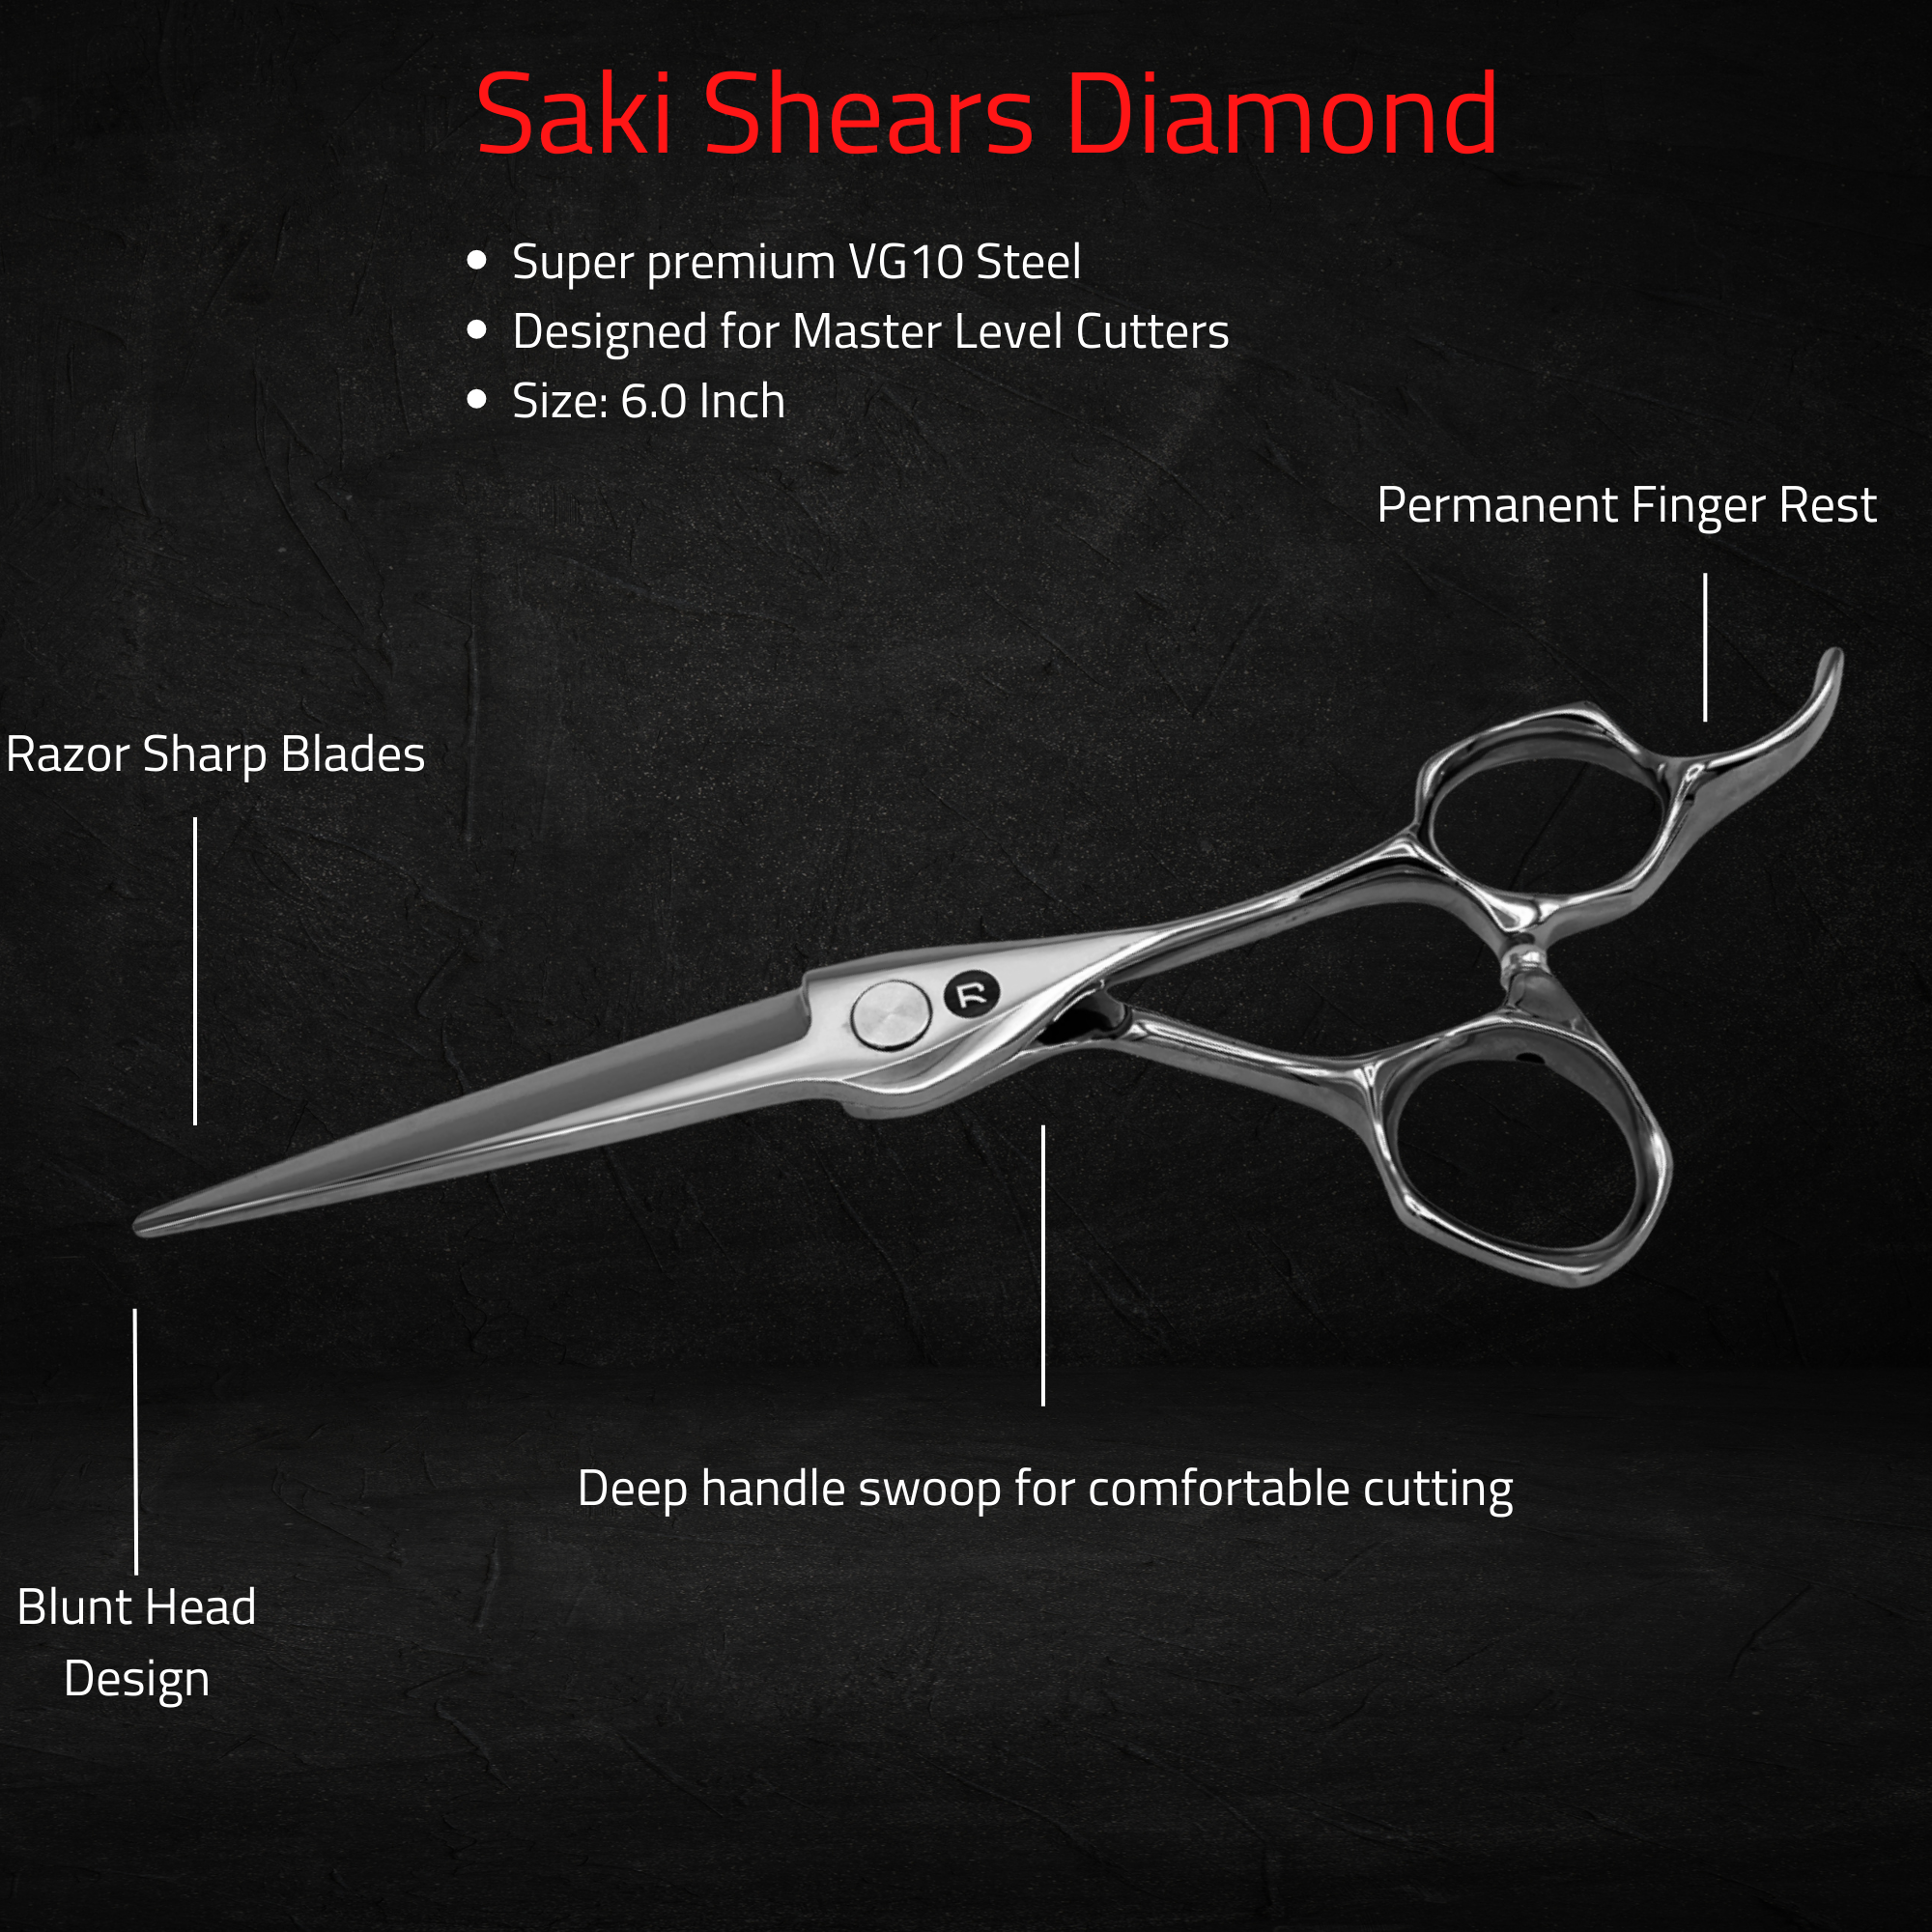 Saki Shears Diamond Hair Shears